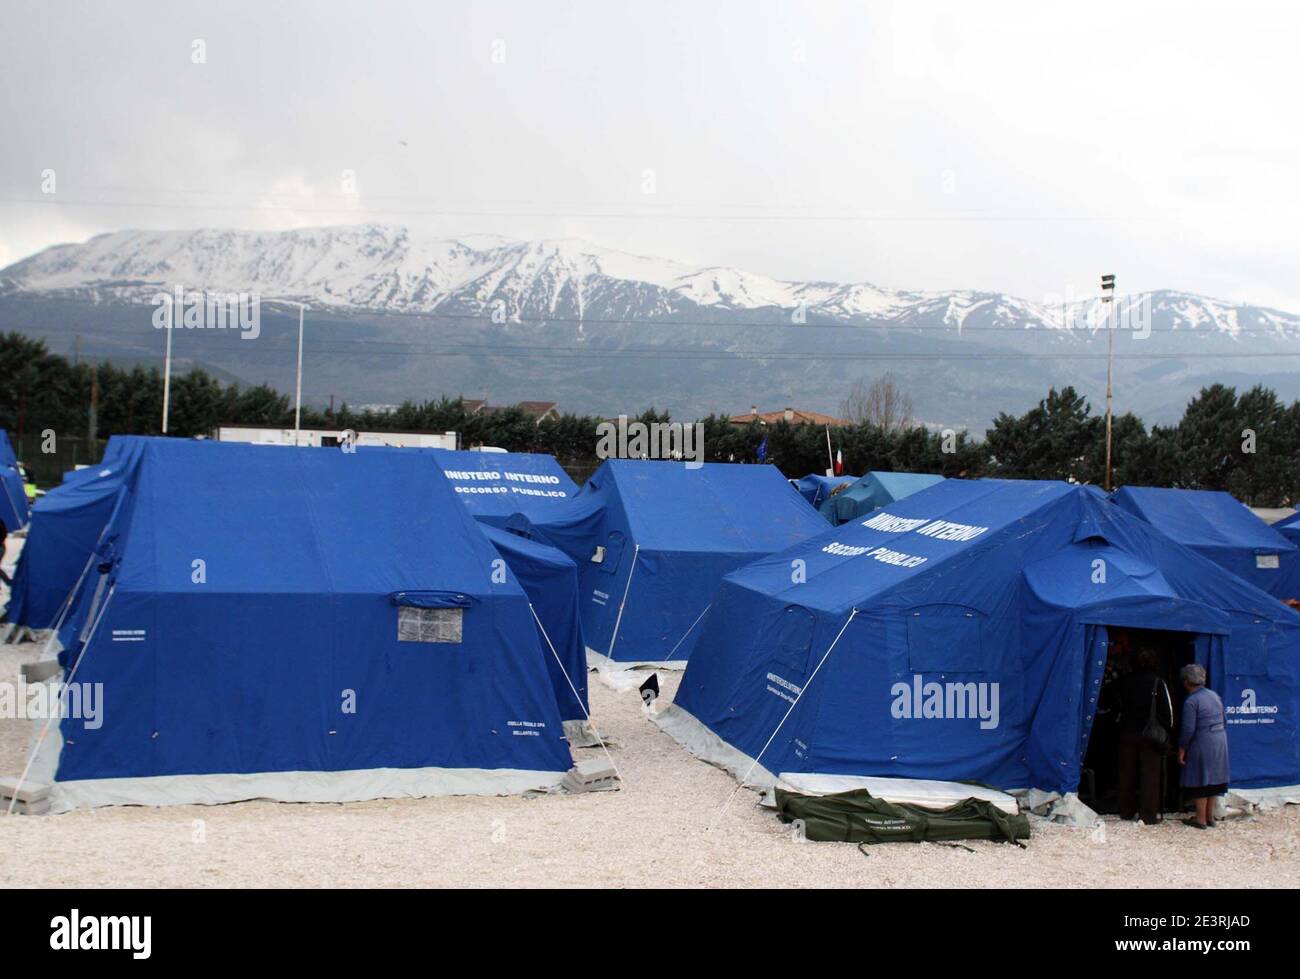 L'Aquila, Italia - 6 aprile 2009: La tendopoli allestita per gli sfollati dopo il terremoto Stock Photo